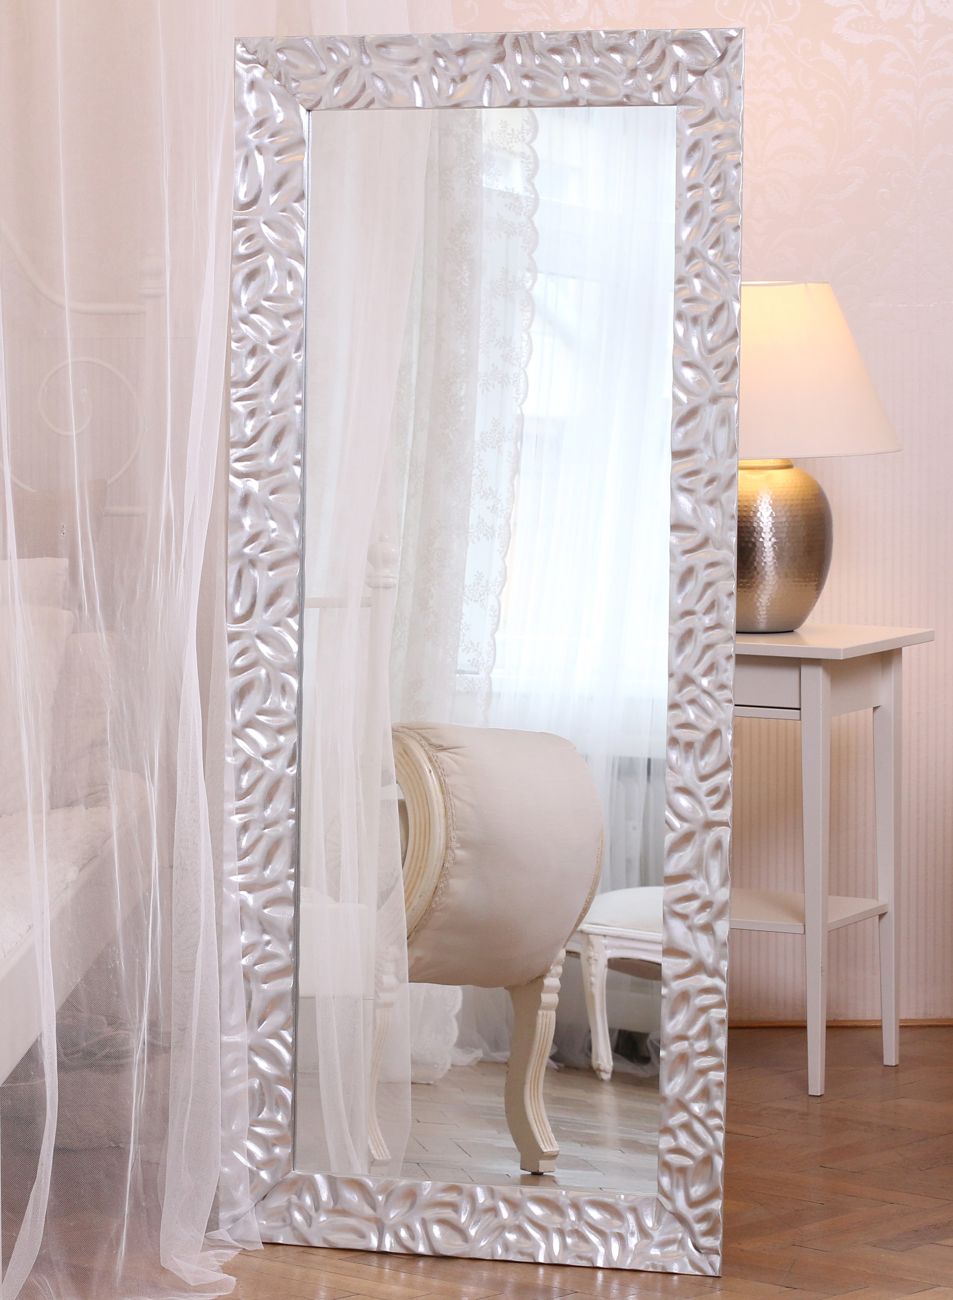 Vysoké zrcadlo v moderním stříbrném rámu v interiéru luxusní ložnice | © Frameit